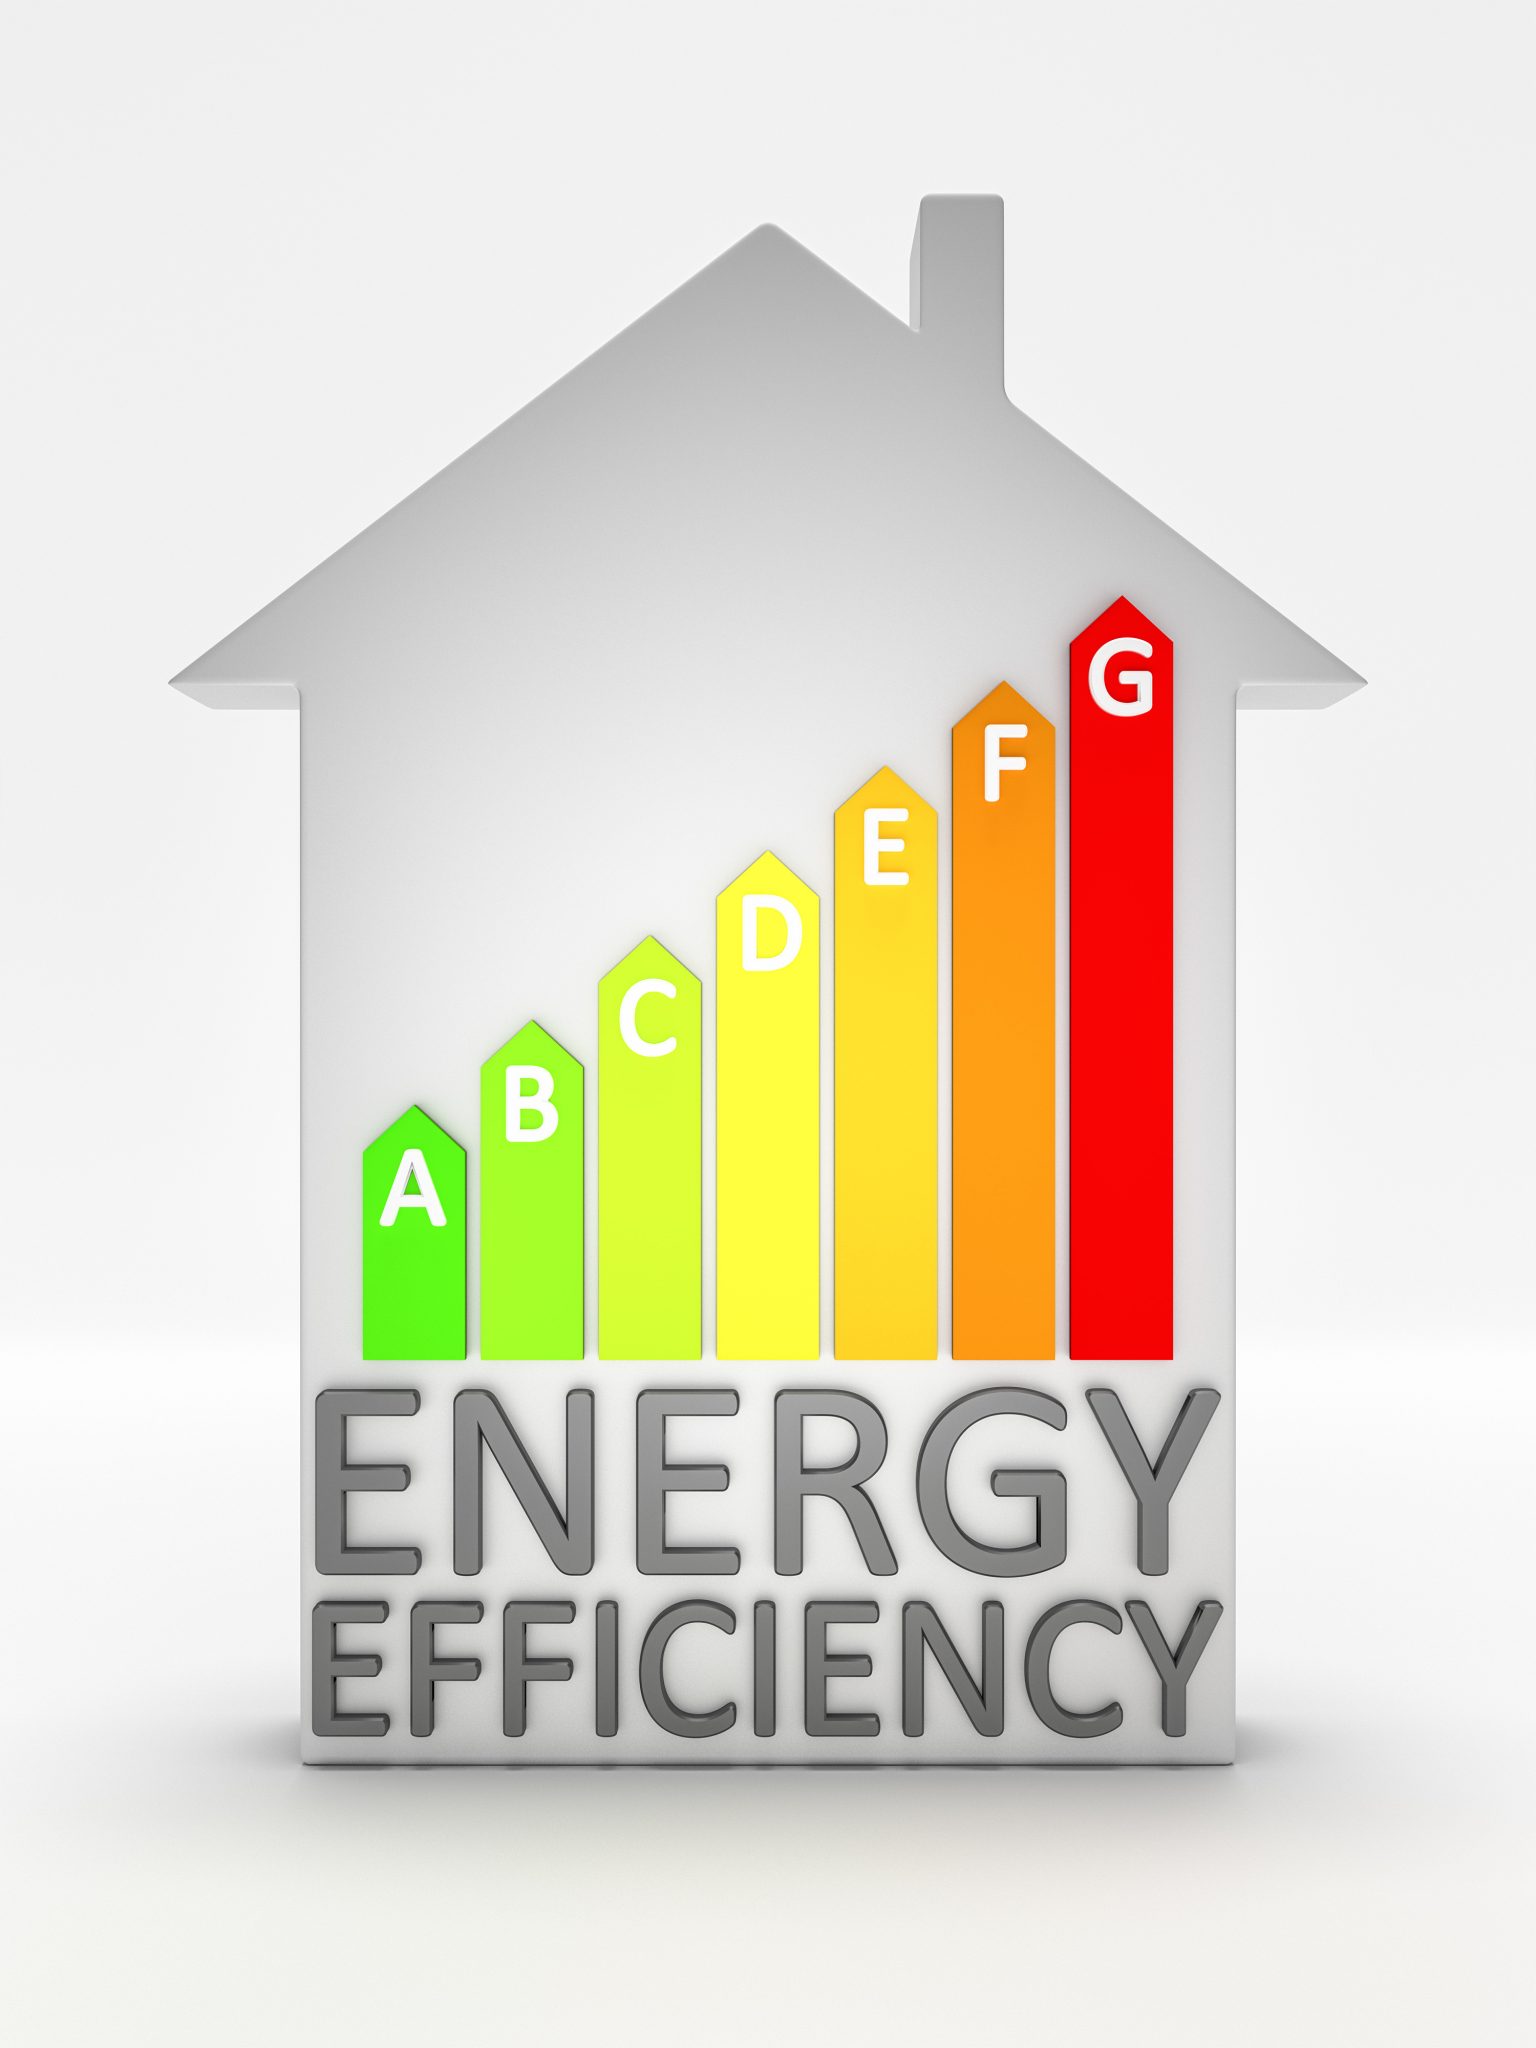 house energy efficiency